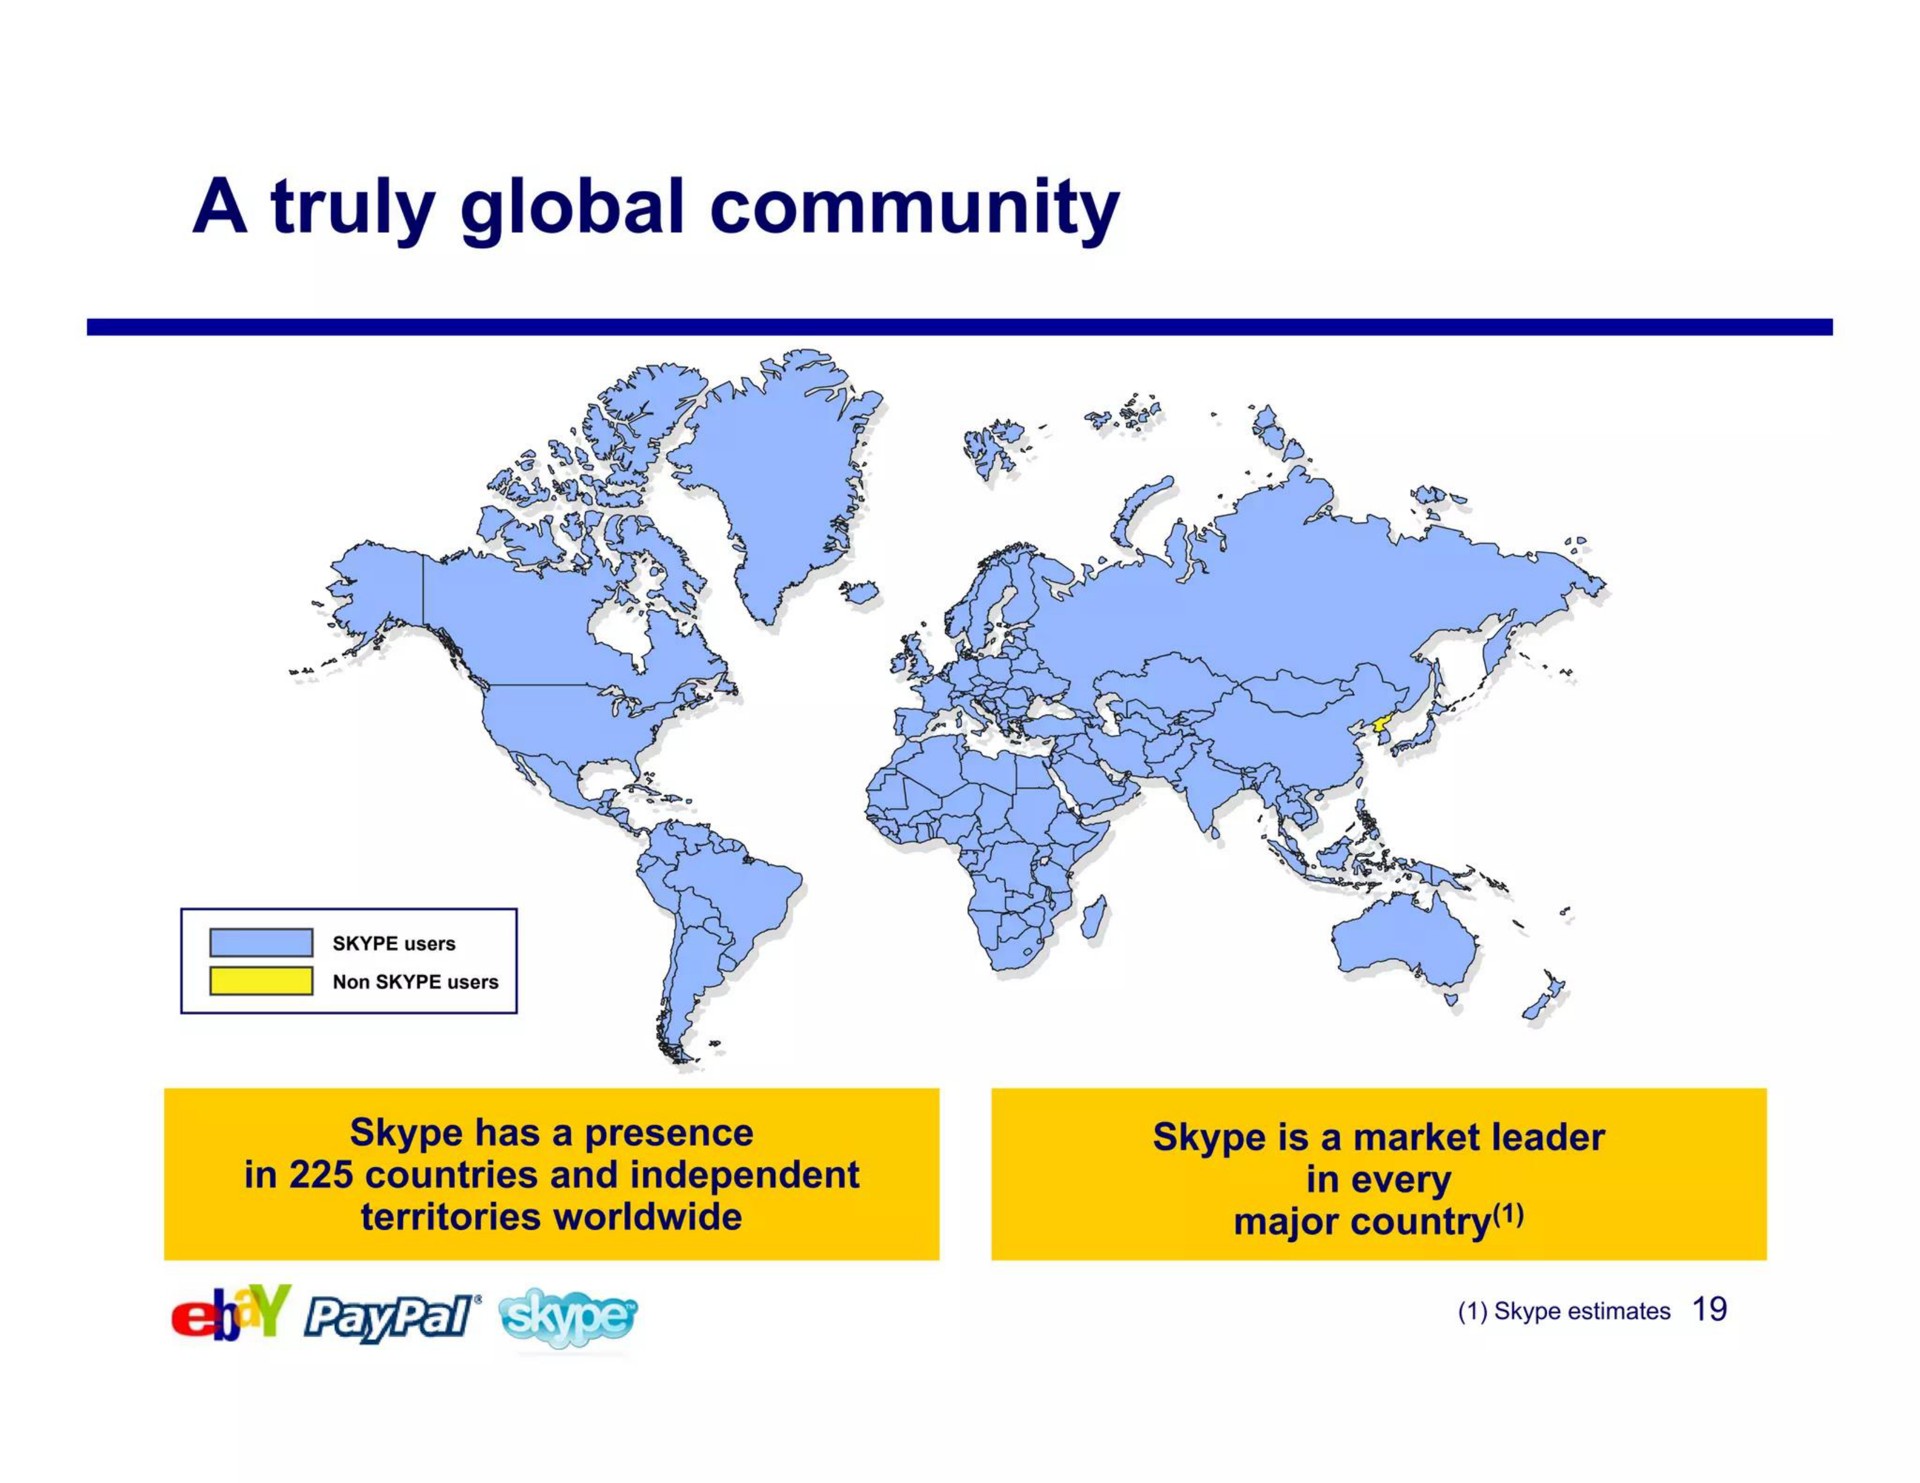 a truly global community | eBay